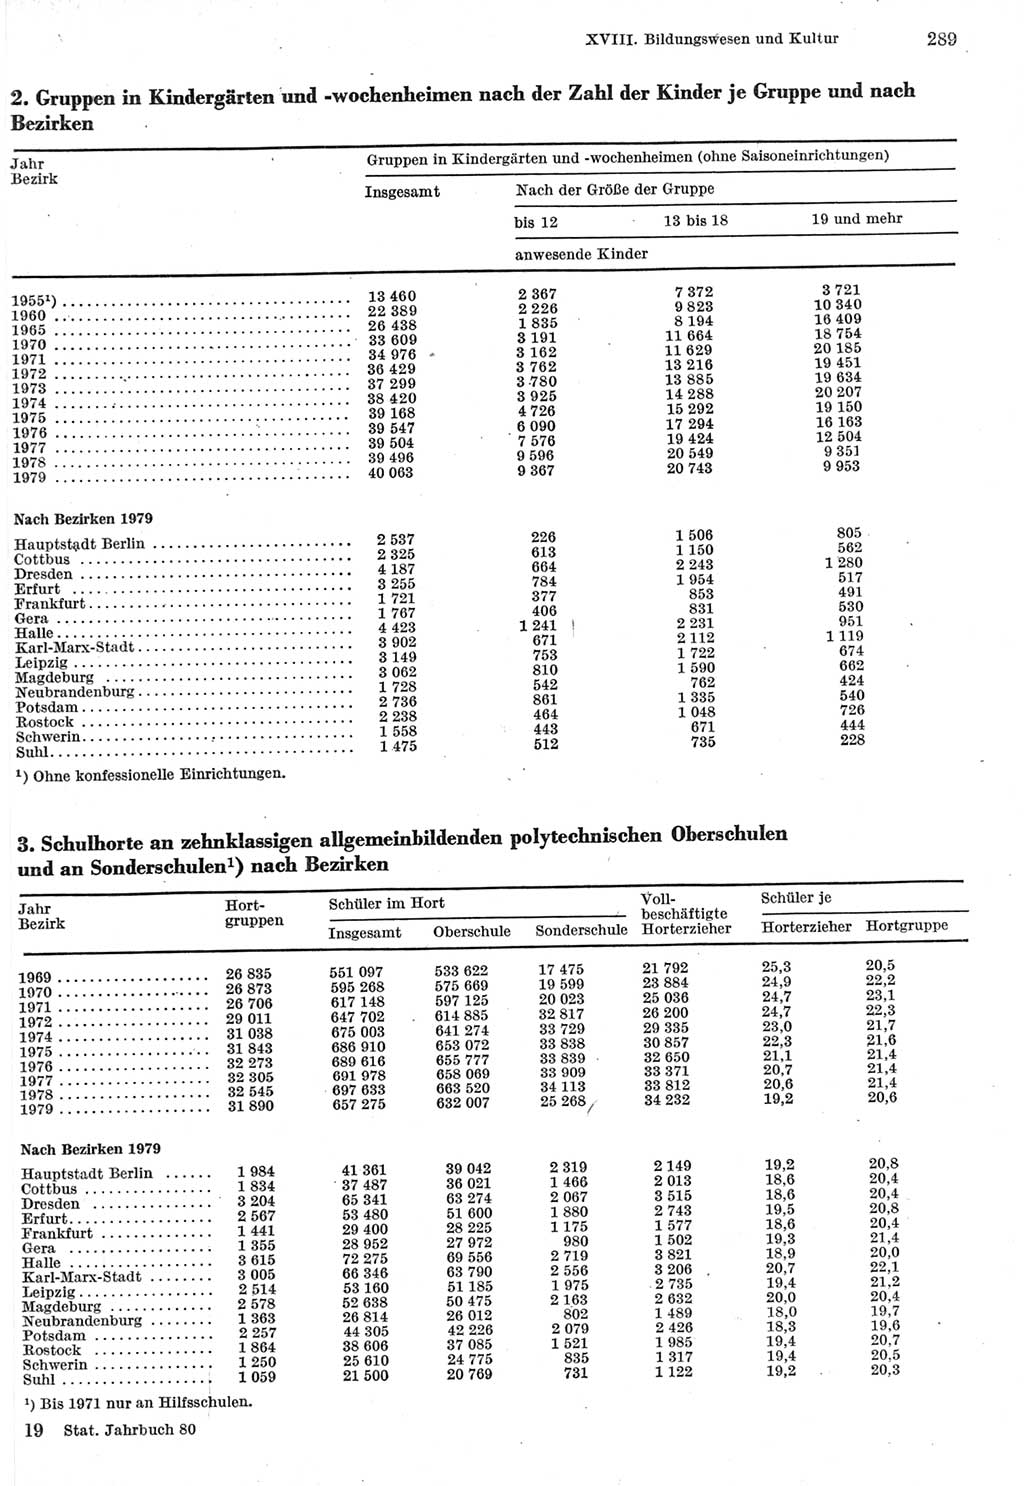 Statistisches Jahrbuch der Deutschen Demokratischen Republik (DDR) 1980, Seite 289 (Stat. Jb. DDR 1980, S. 289)